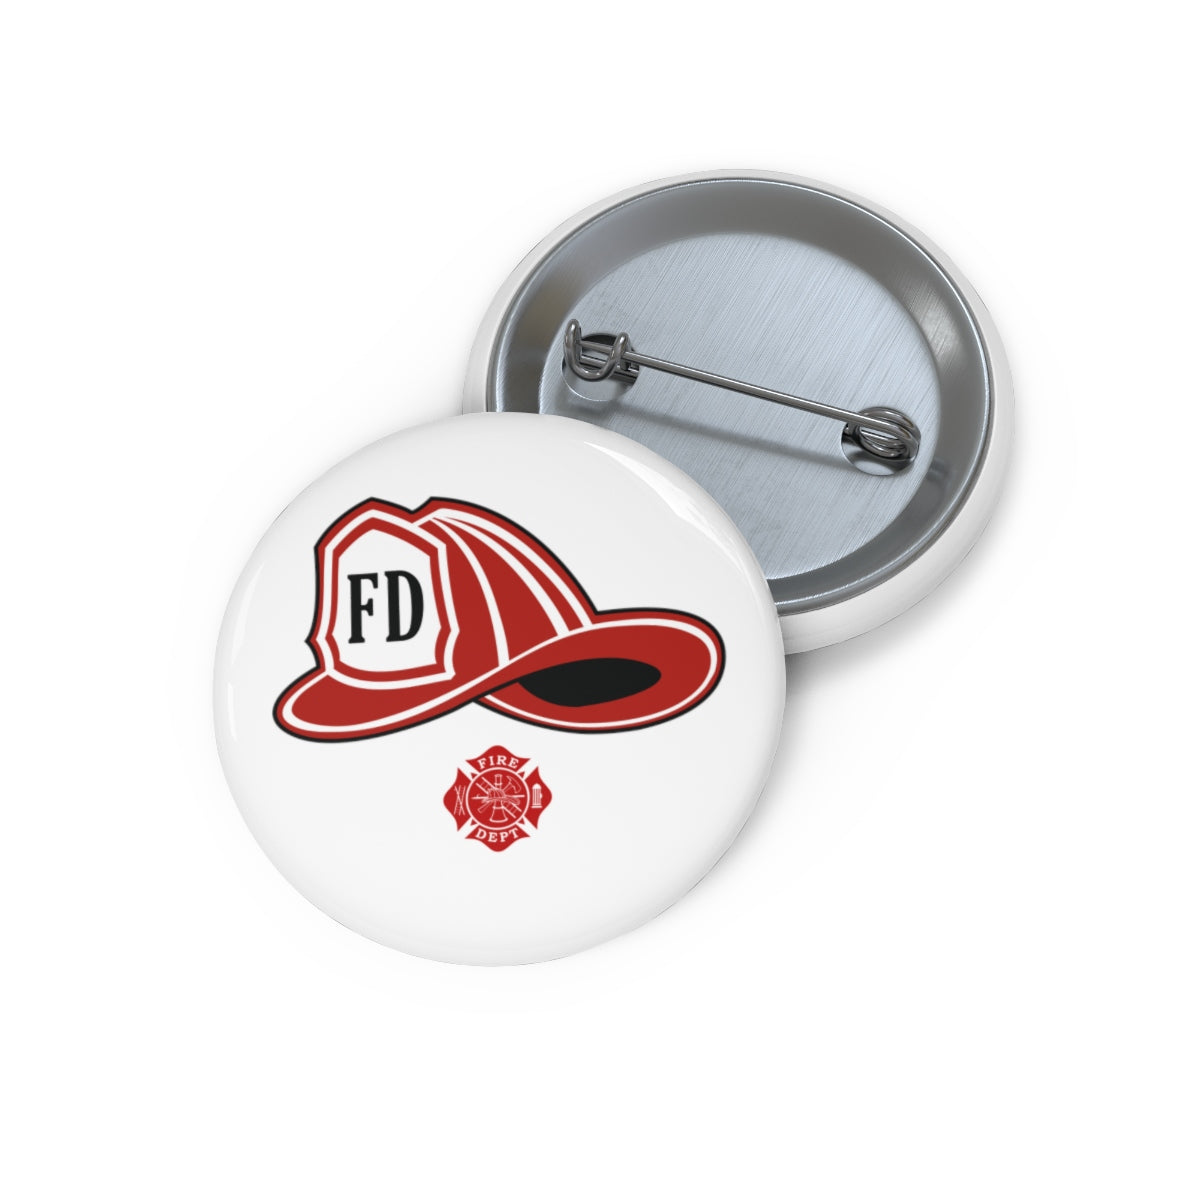 Firefighter Helmet Pin Buttons - firestationstore.com - Accessories